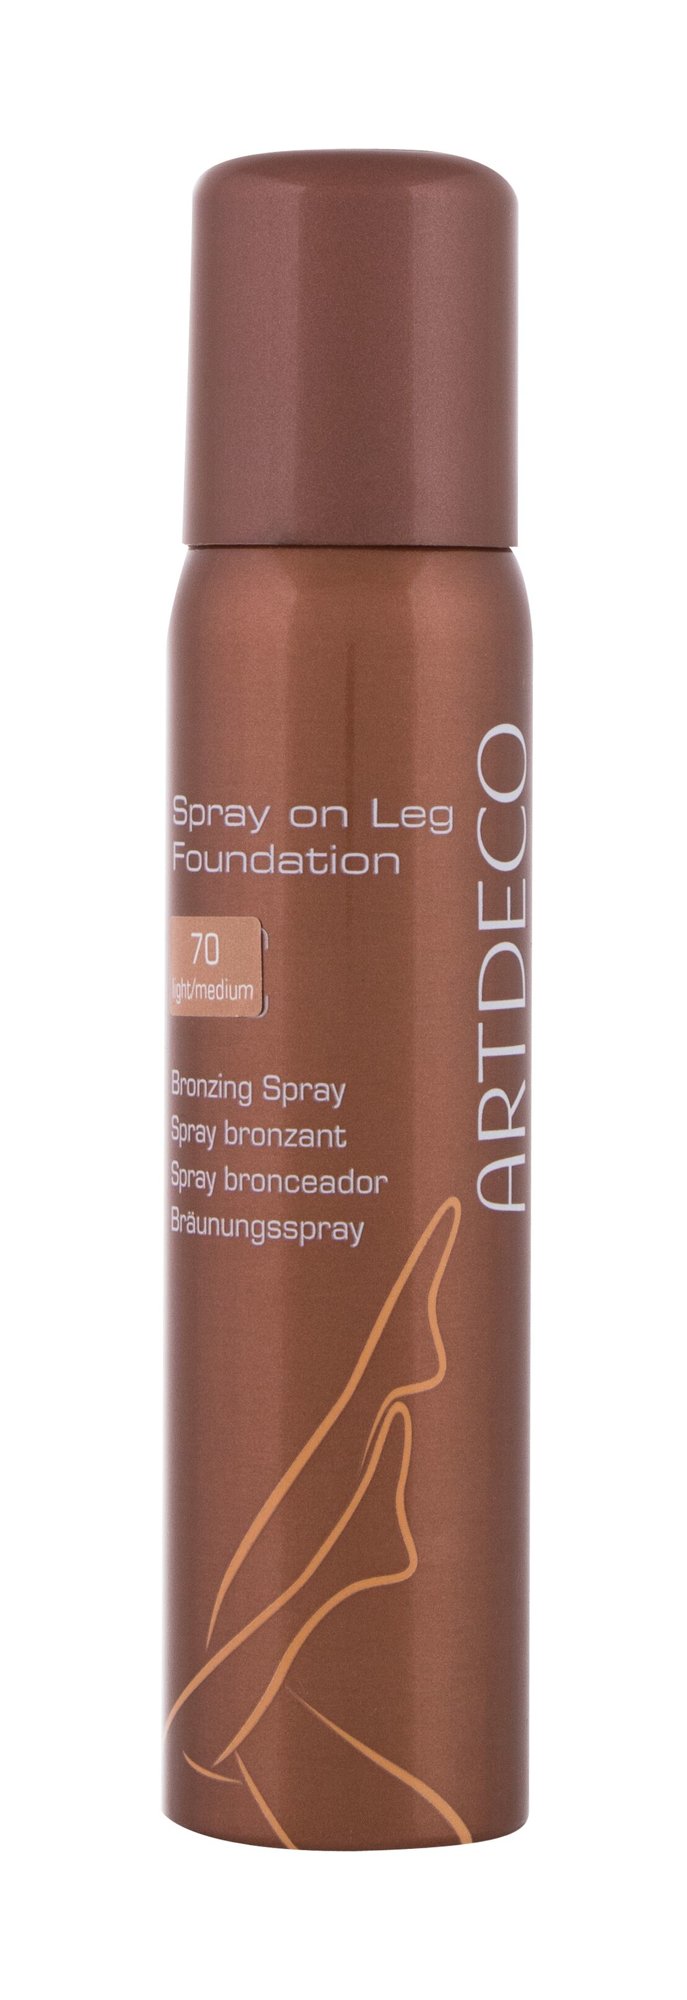 Artdeco Spray On Leg Foundation 100ml savaiminio įdegio kremas